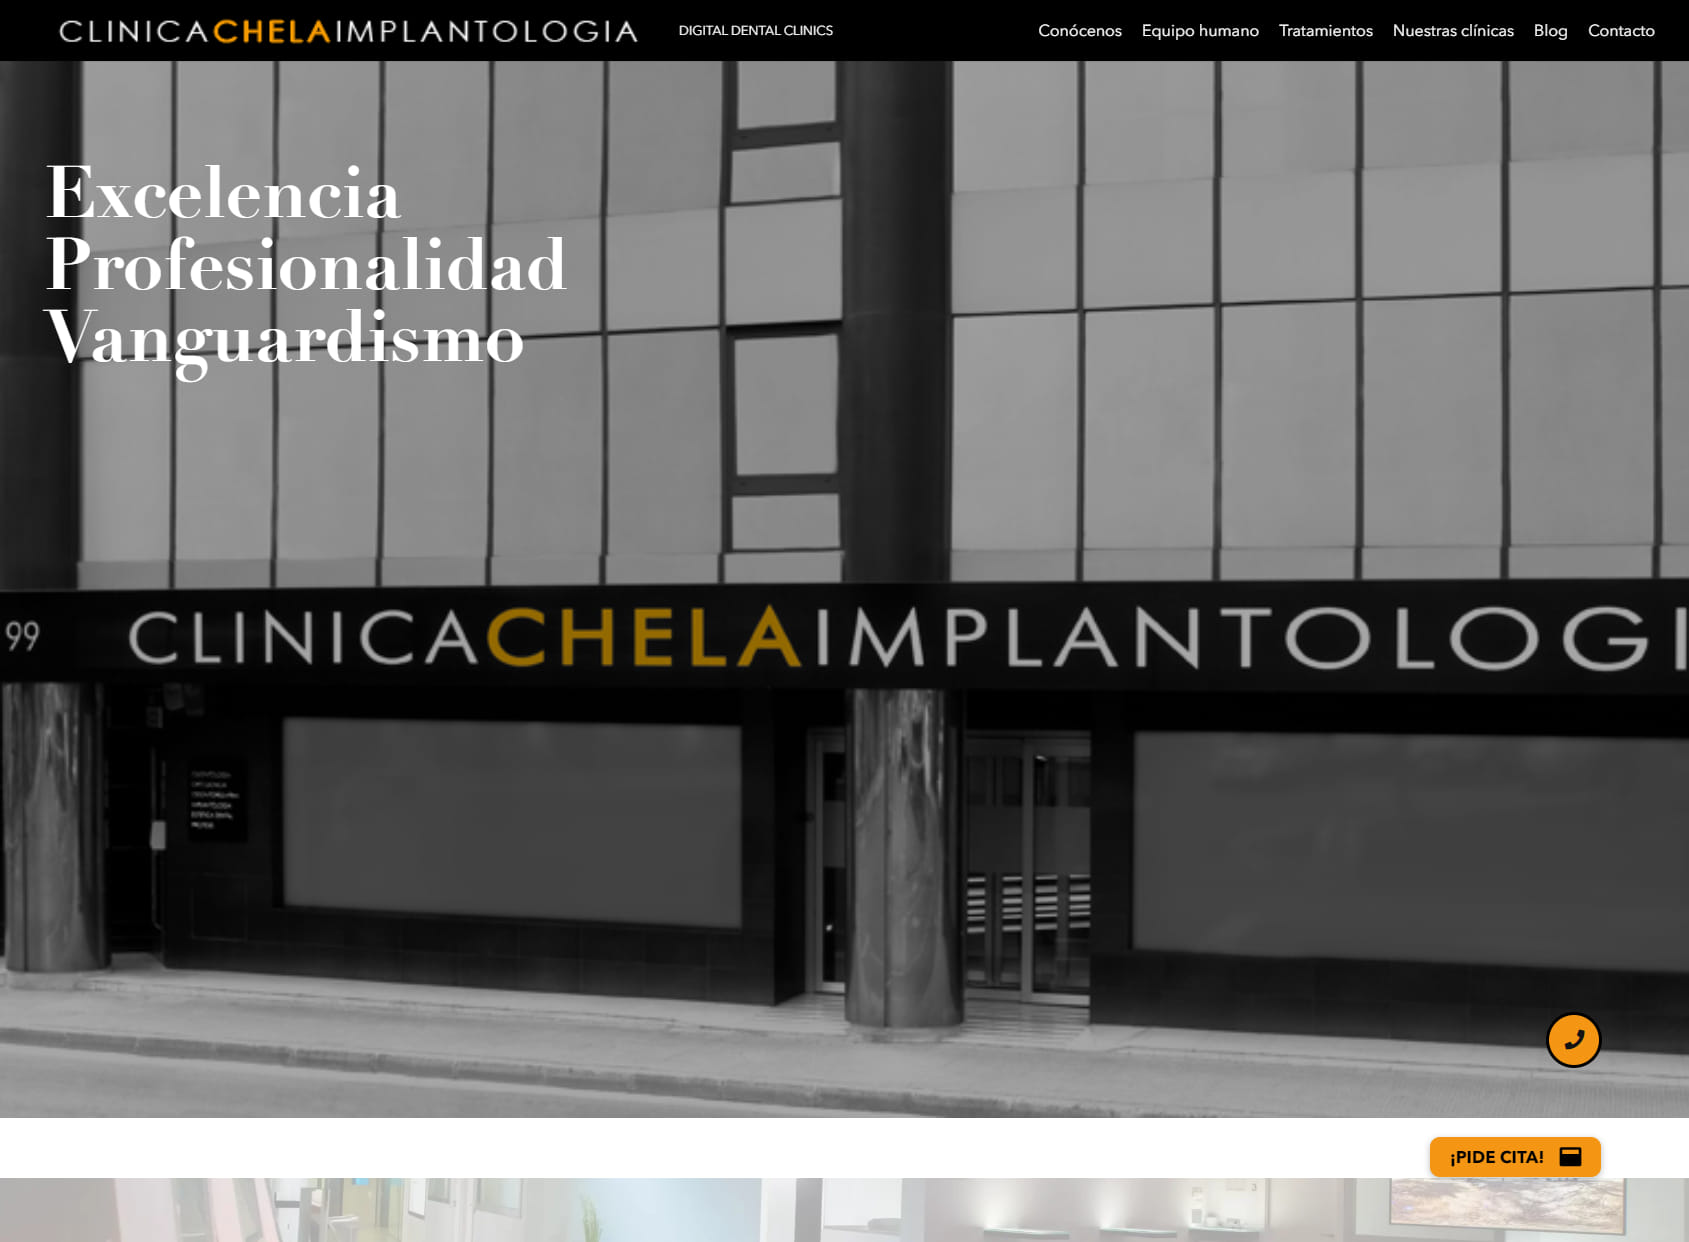 Clinica Dental Lleida | Clinica Chela Implantologia